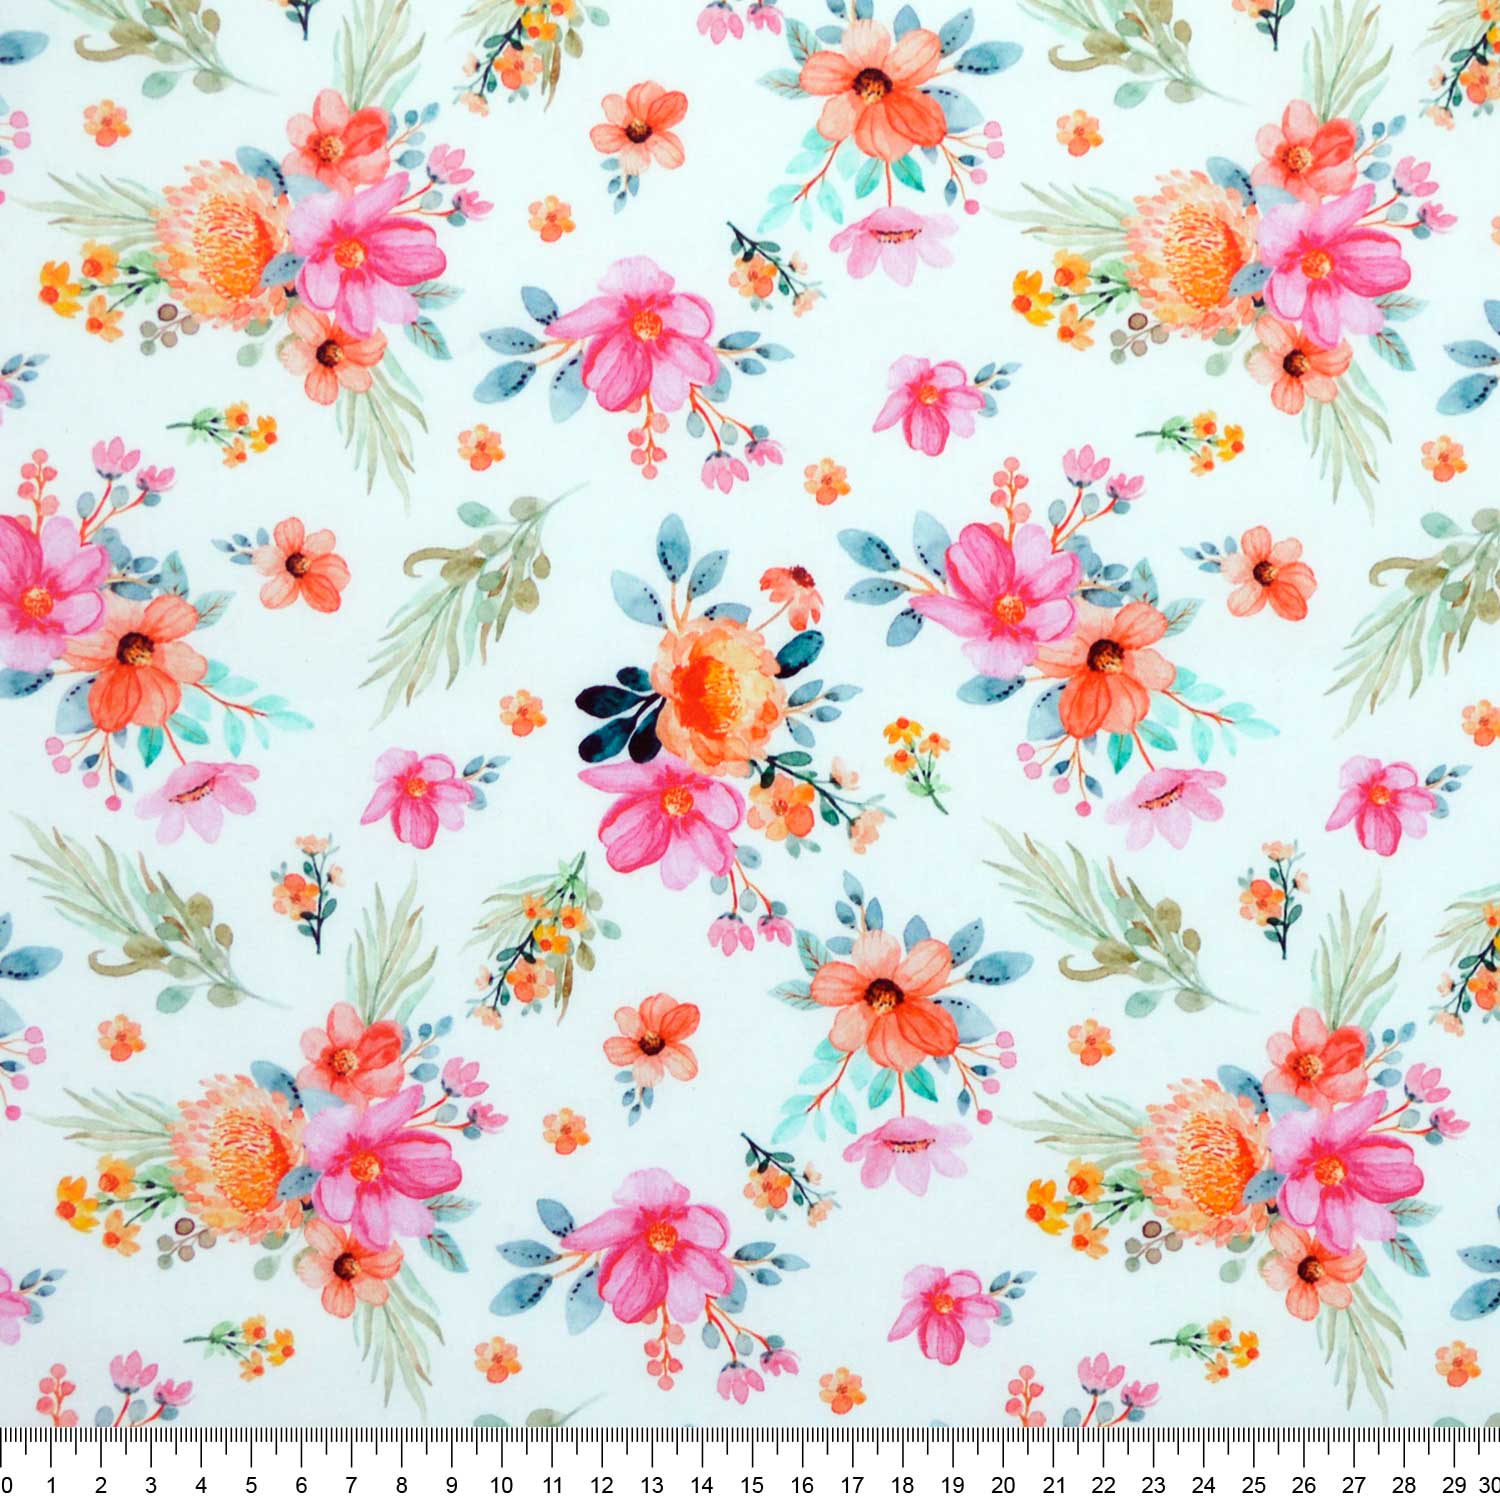 tecido-tricoline-estampado-digital-floral-primavera-della-aviamentos-tecidos-caldeira-capa-regua-110